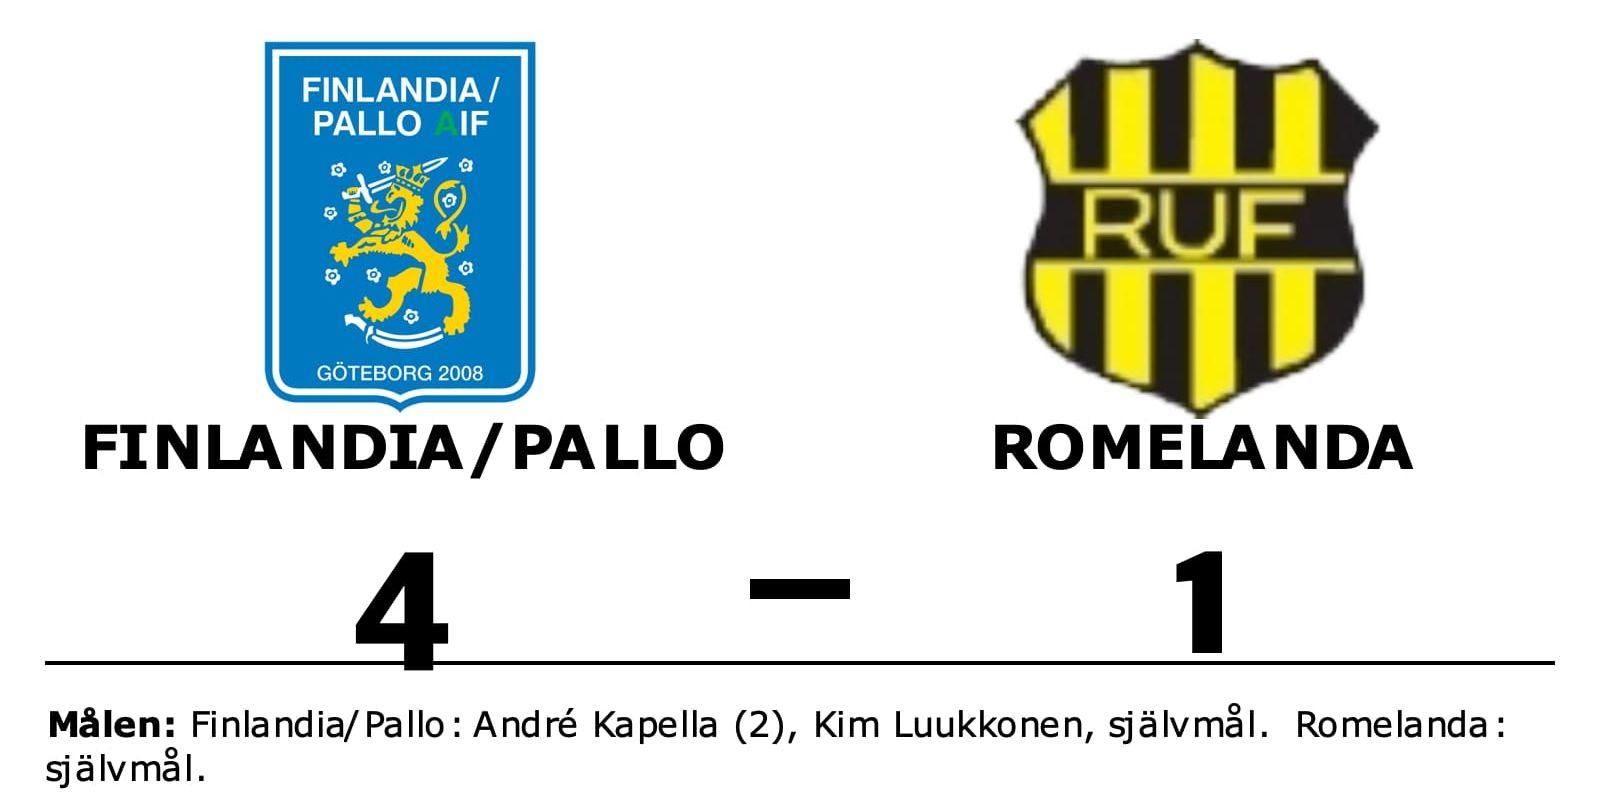 Finlandia/Pallo vann mot Romelanda